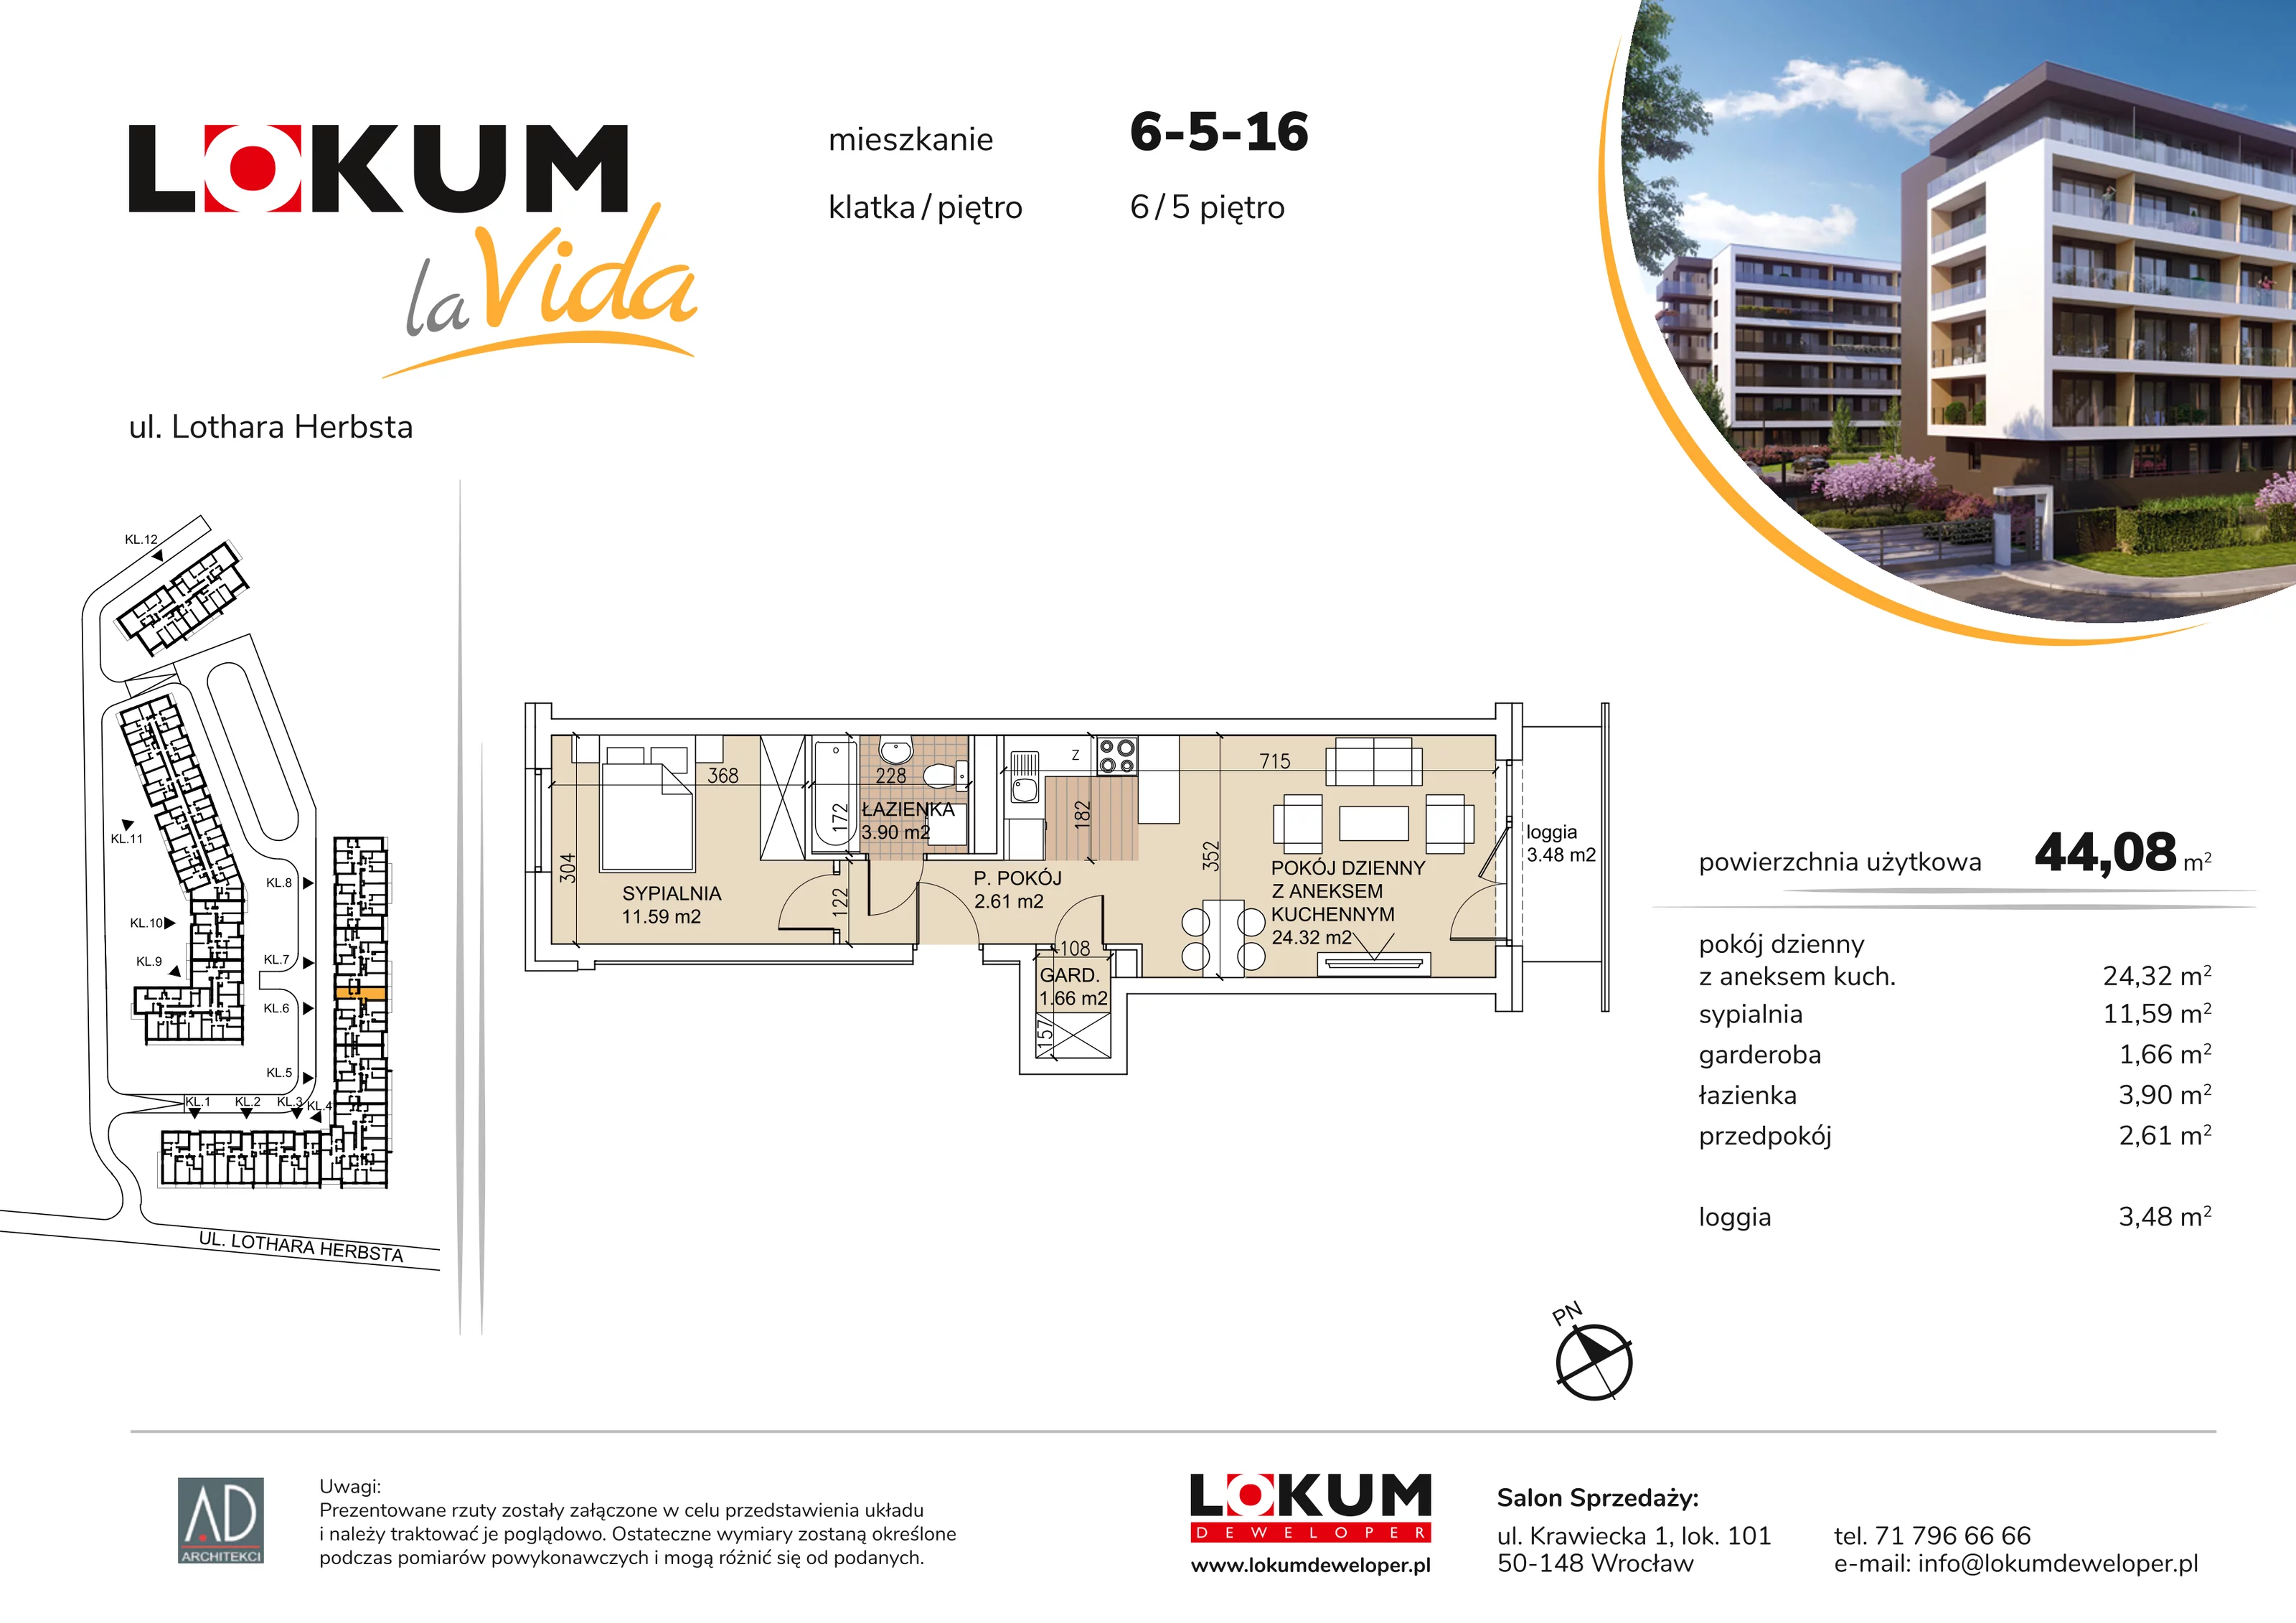 Mieszkanie 44,08 m², piętro 5, oferta nr 6-5-16, Lokum la Vida, Wrocław, Sołtysowice, ul. Lothara Herbsta